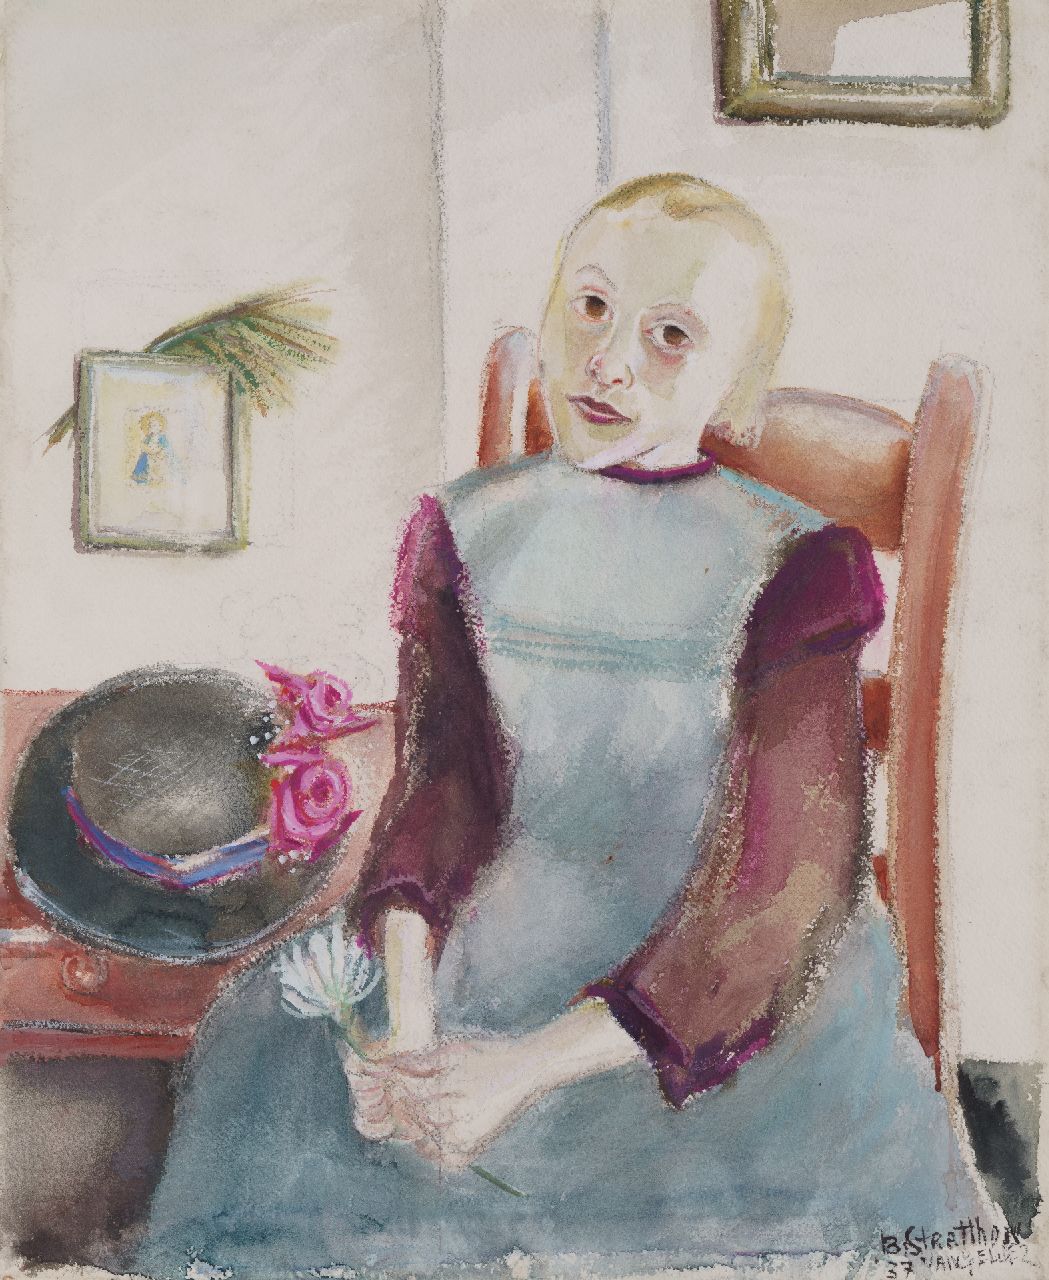 Gelder R. van | Rebecca 'Bobette' van Gelder, Girl with flower, watercolour on paper 50.0 x 41.6 cm, signed l.r. with pseudonym  'B. Stratthon van Gelder' and dated '37